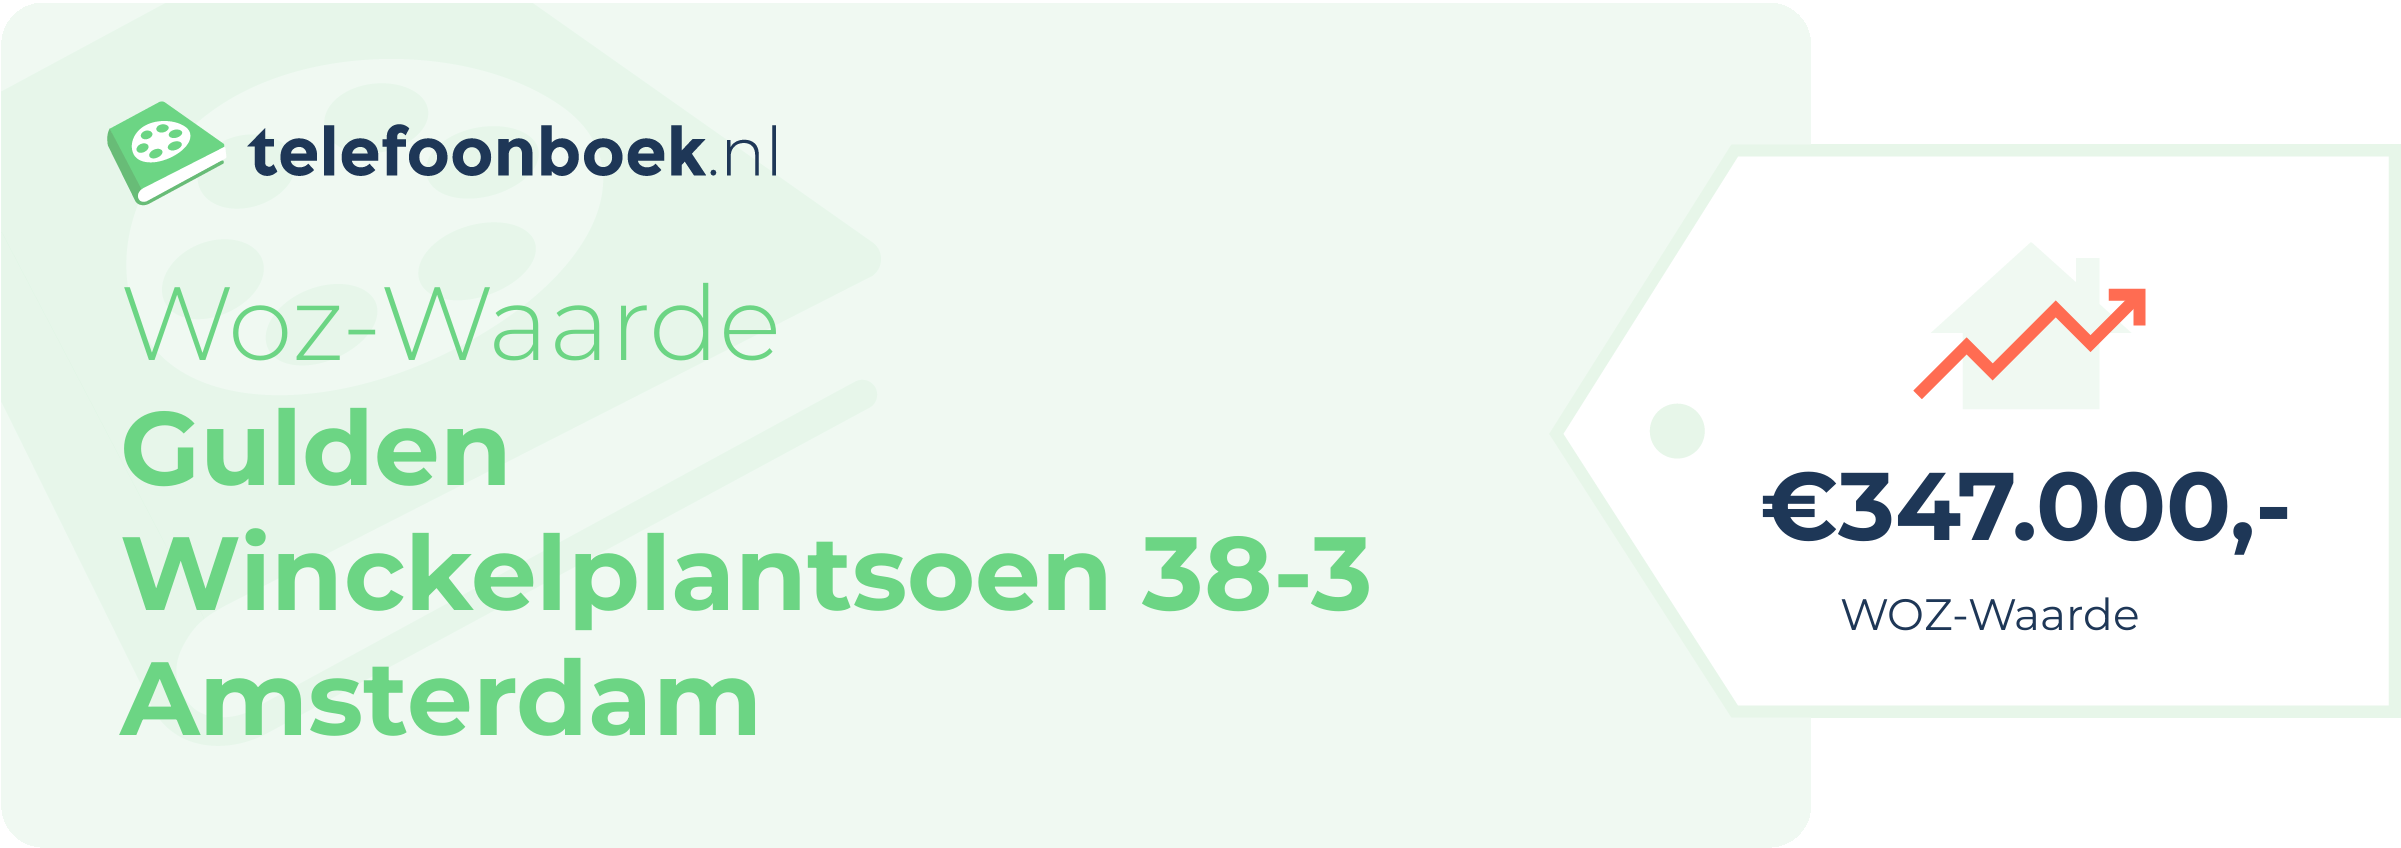 WOZ-waarde Gulden Winckelplantsoen 38-3 Amsterdam